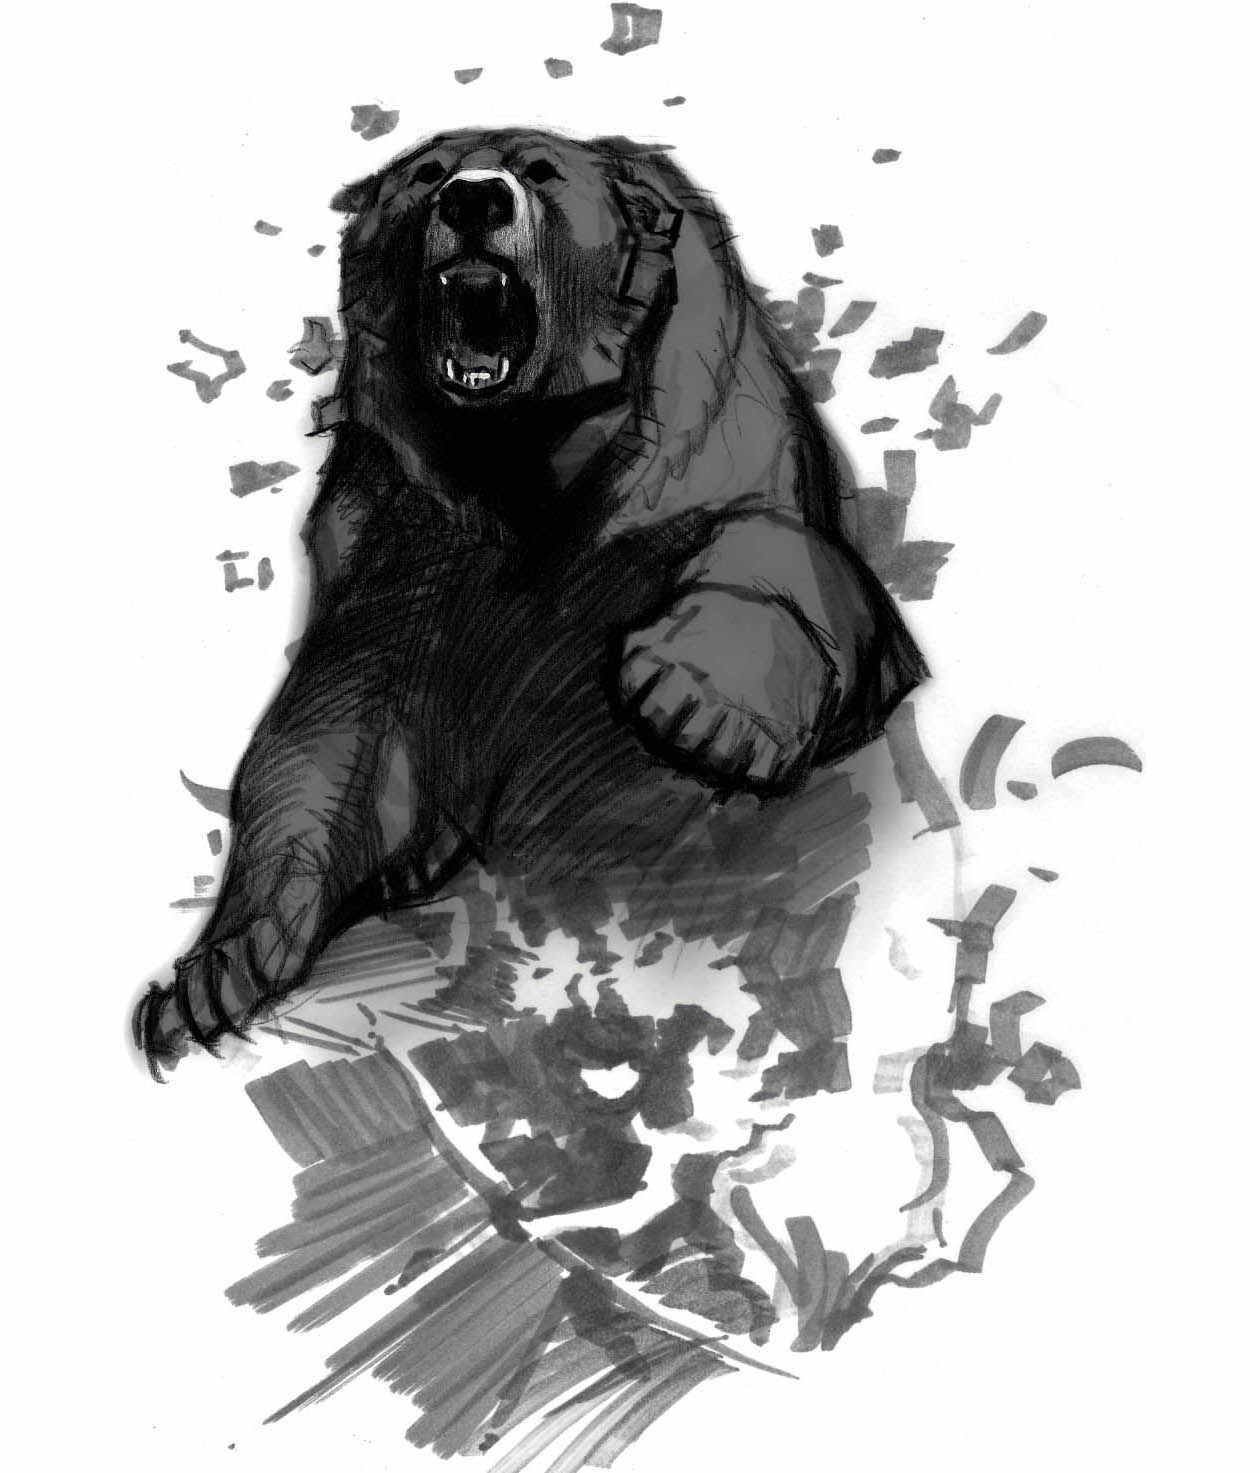 Русский медведь арт